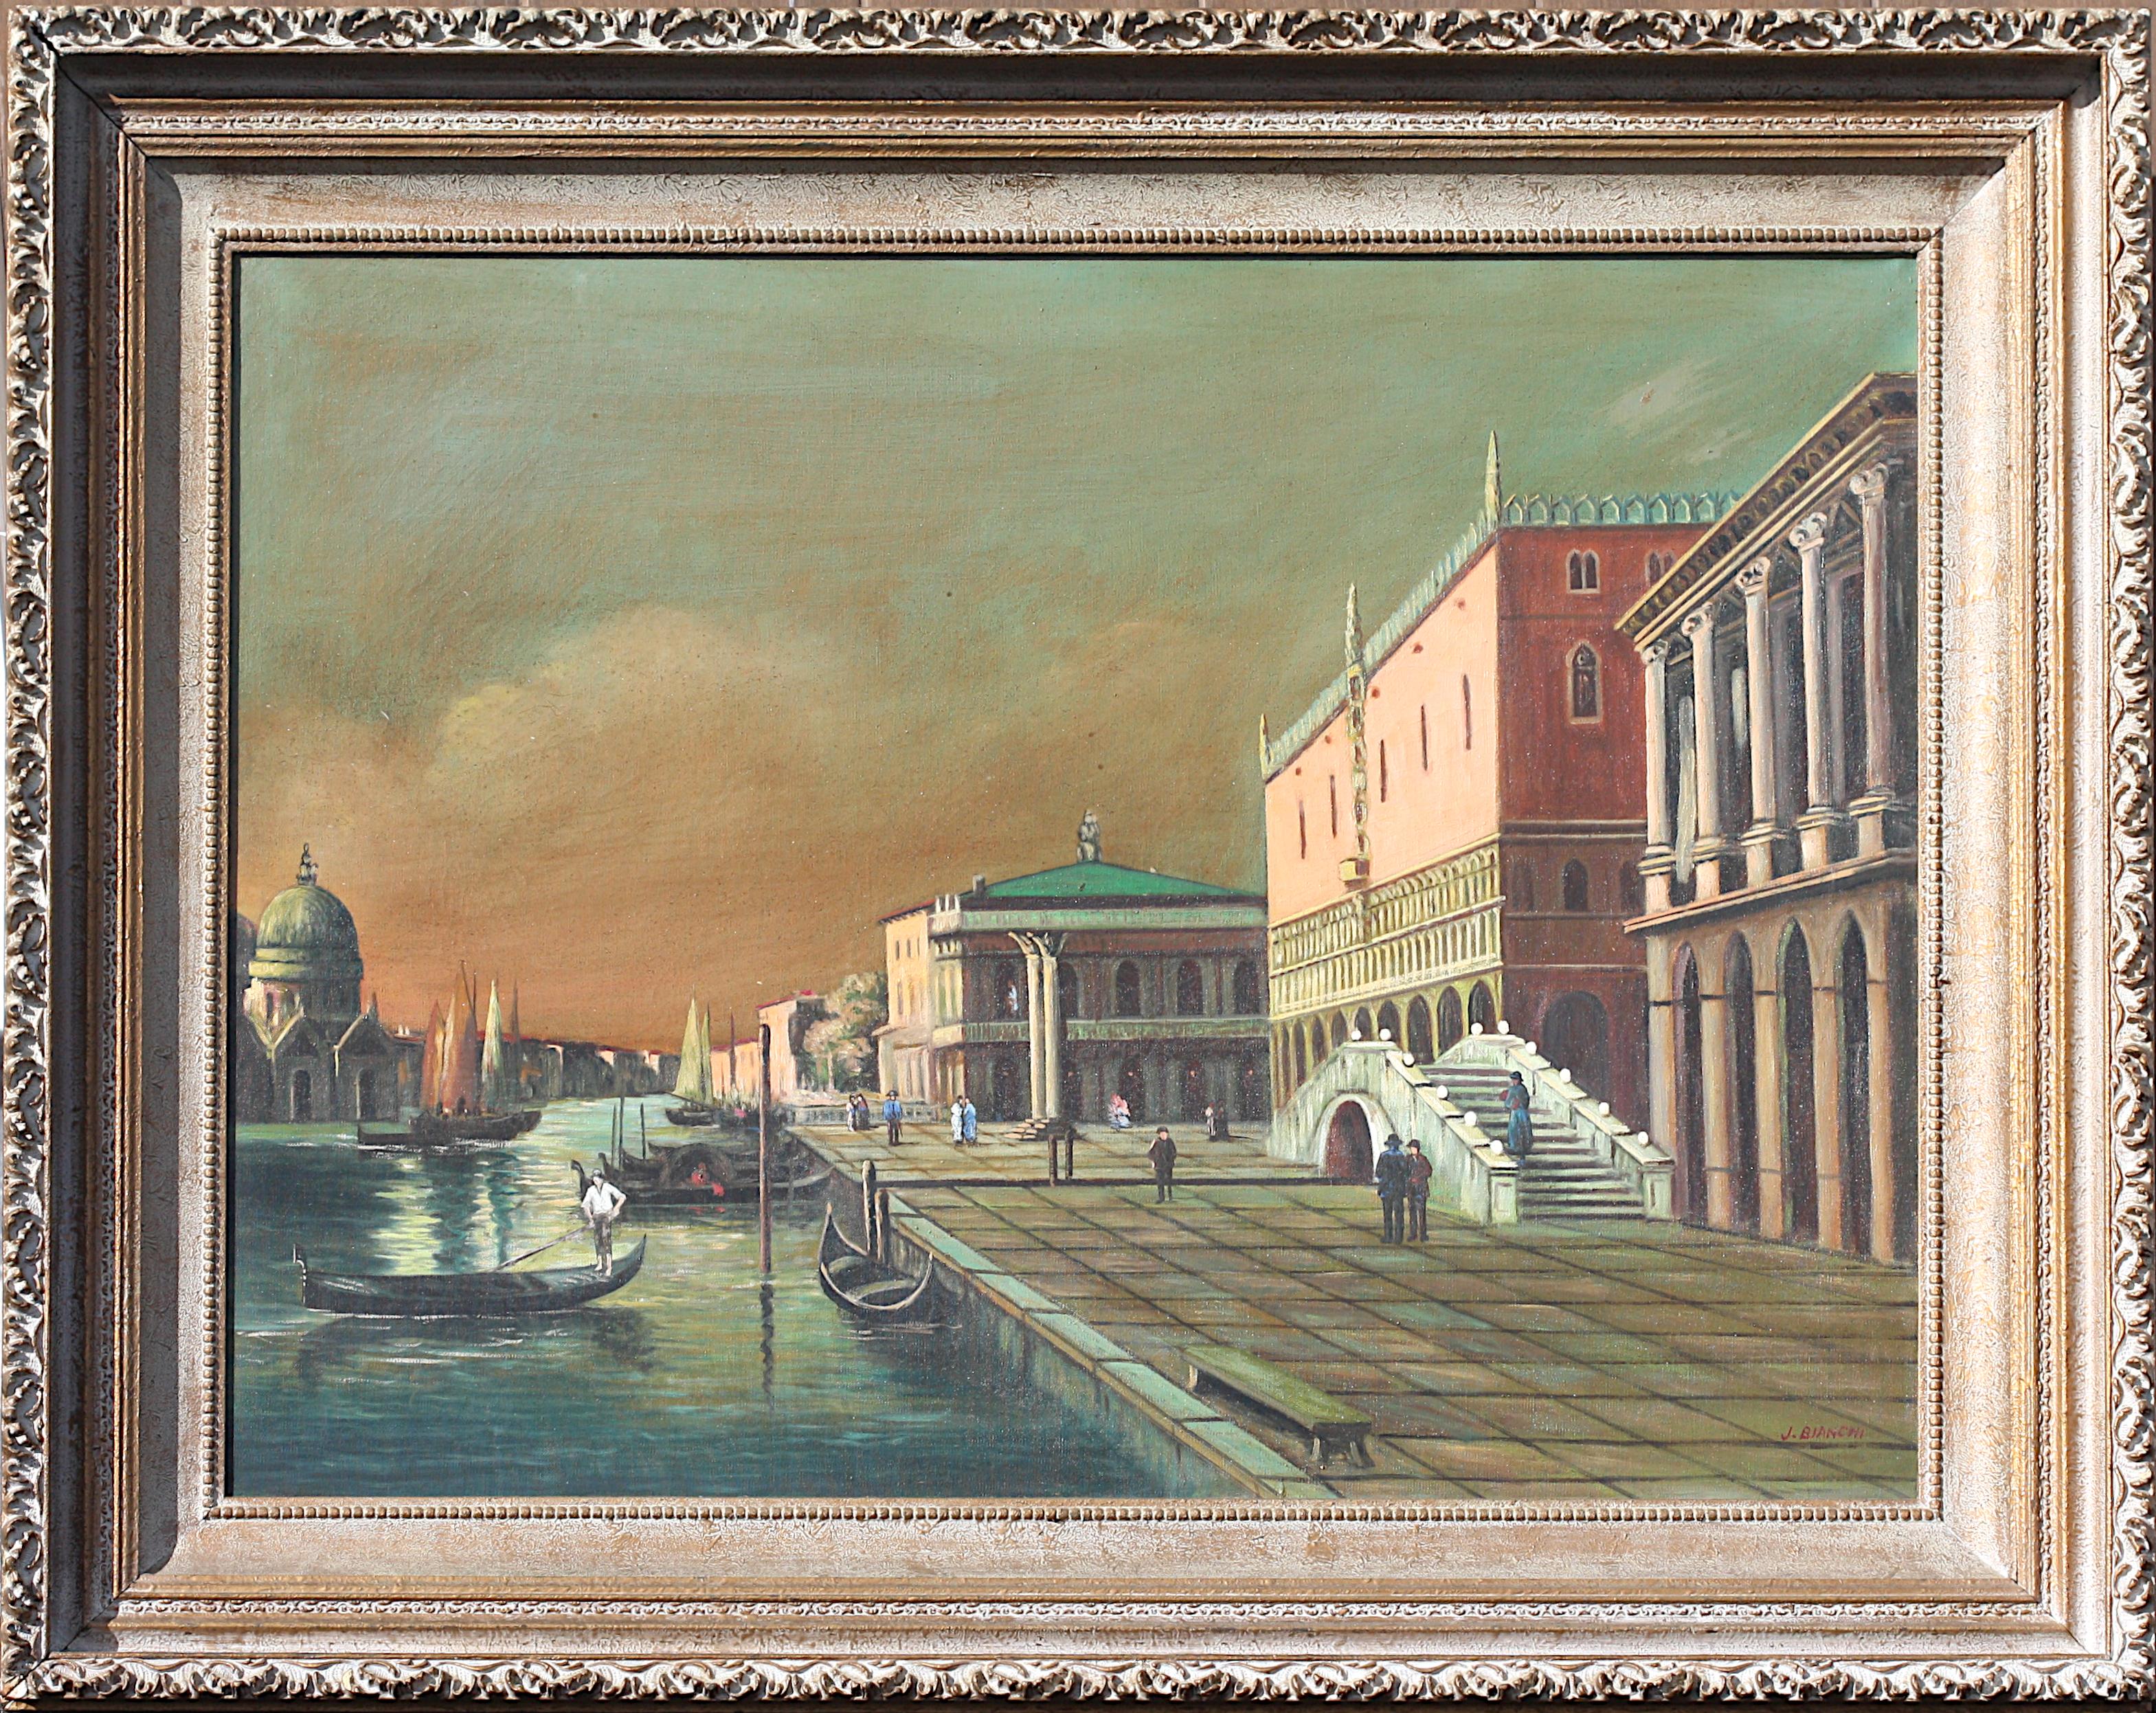 
John Bianchi, (Américain, 20ème siècle) Peinture
Le Grand Canal et le Palazzo Ducale, huile sur toile, signée J. Bianchi, en bas à droite
30 par 40 pouces, hors tout, cultivé 40 par 50 pouces.